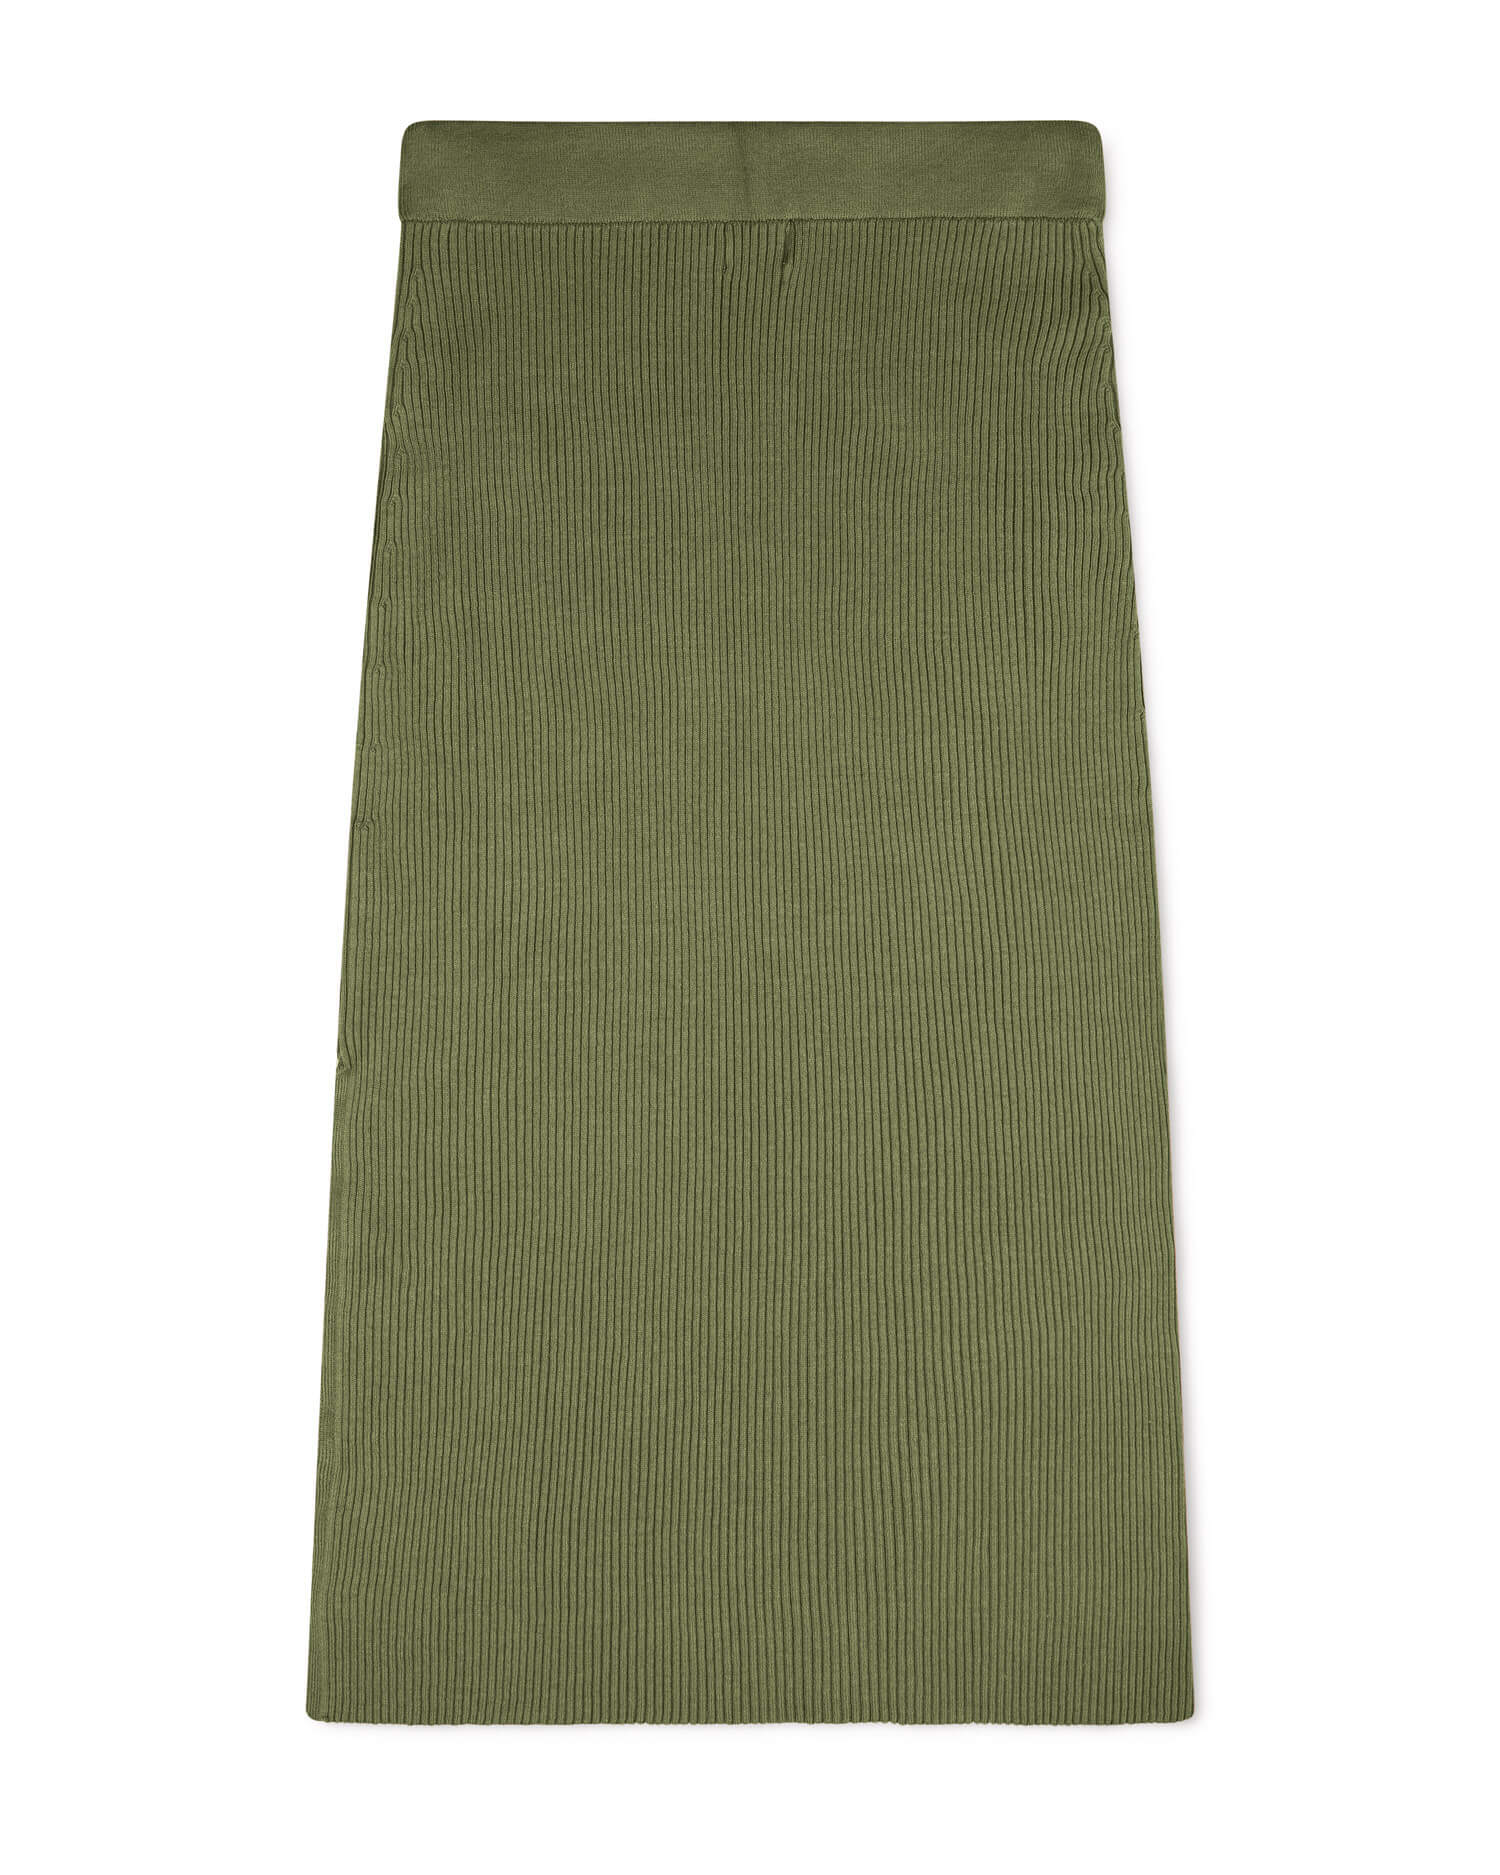 Green skirt made of 100% organic cotton from Matona